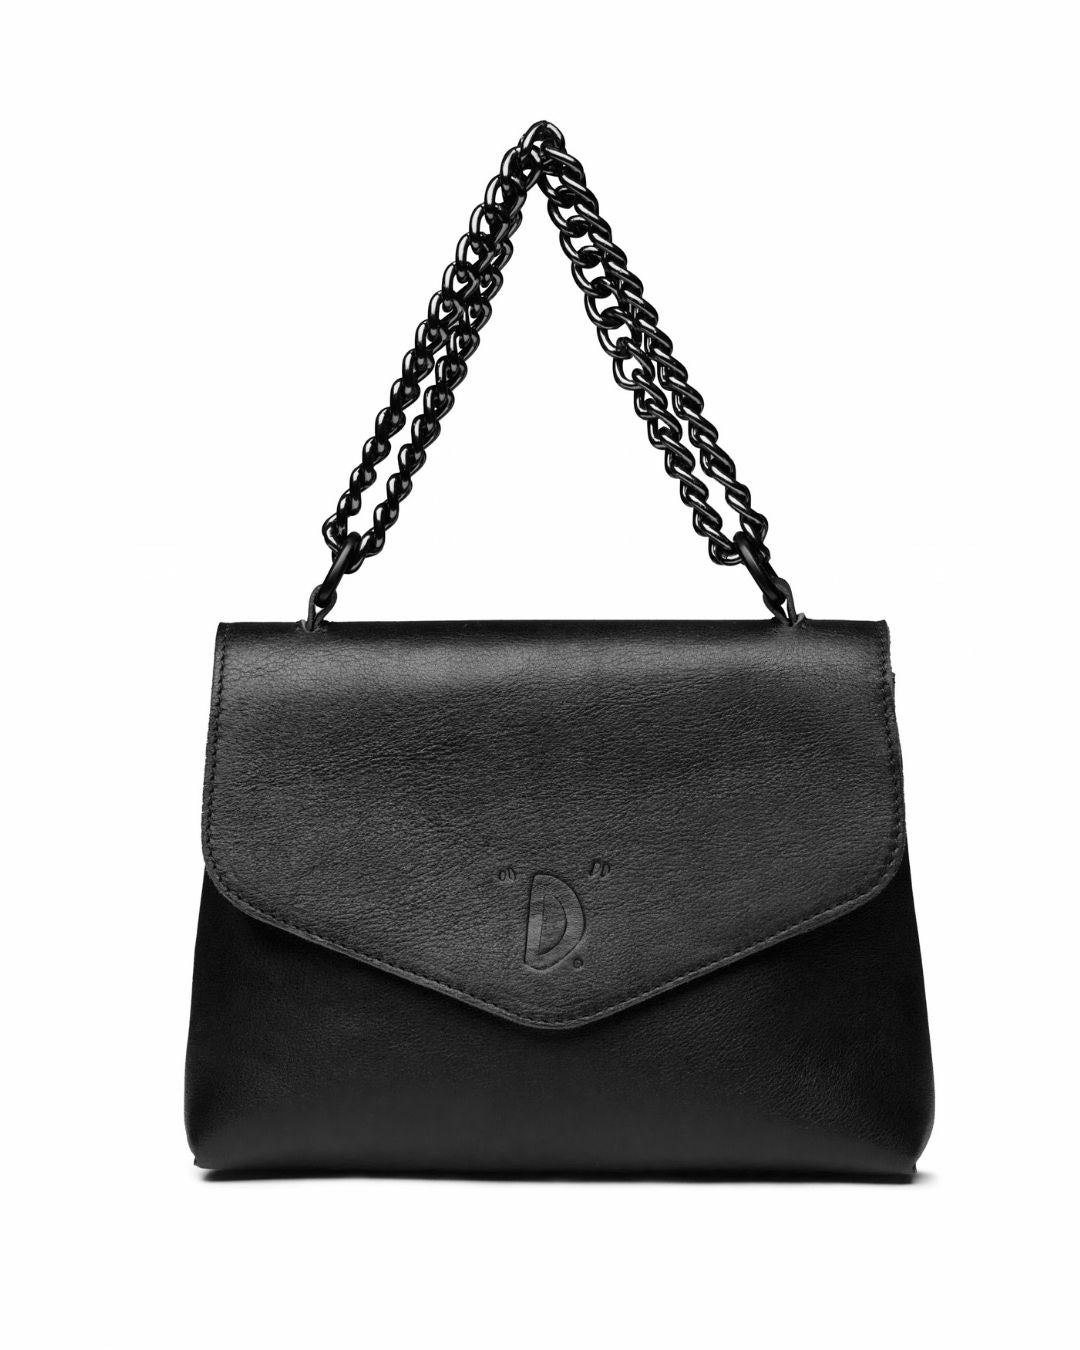 Leather D Model Bag